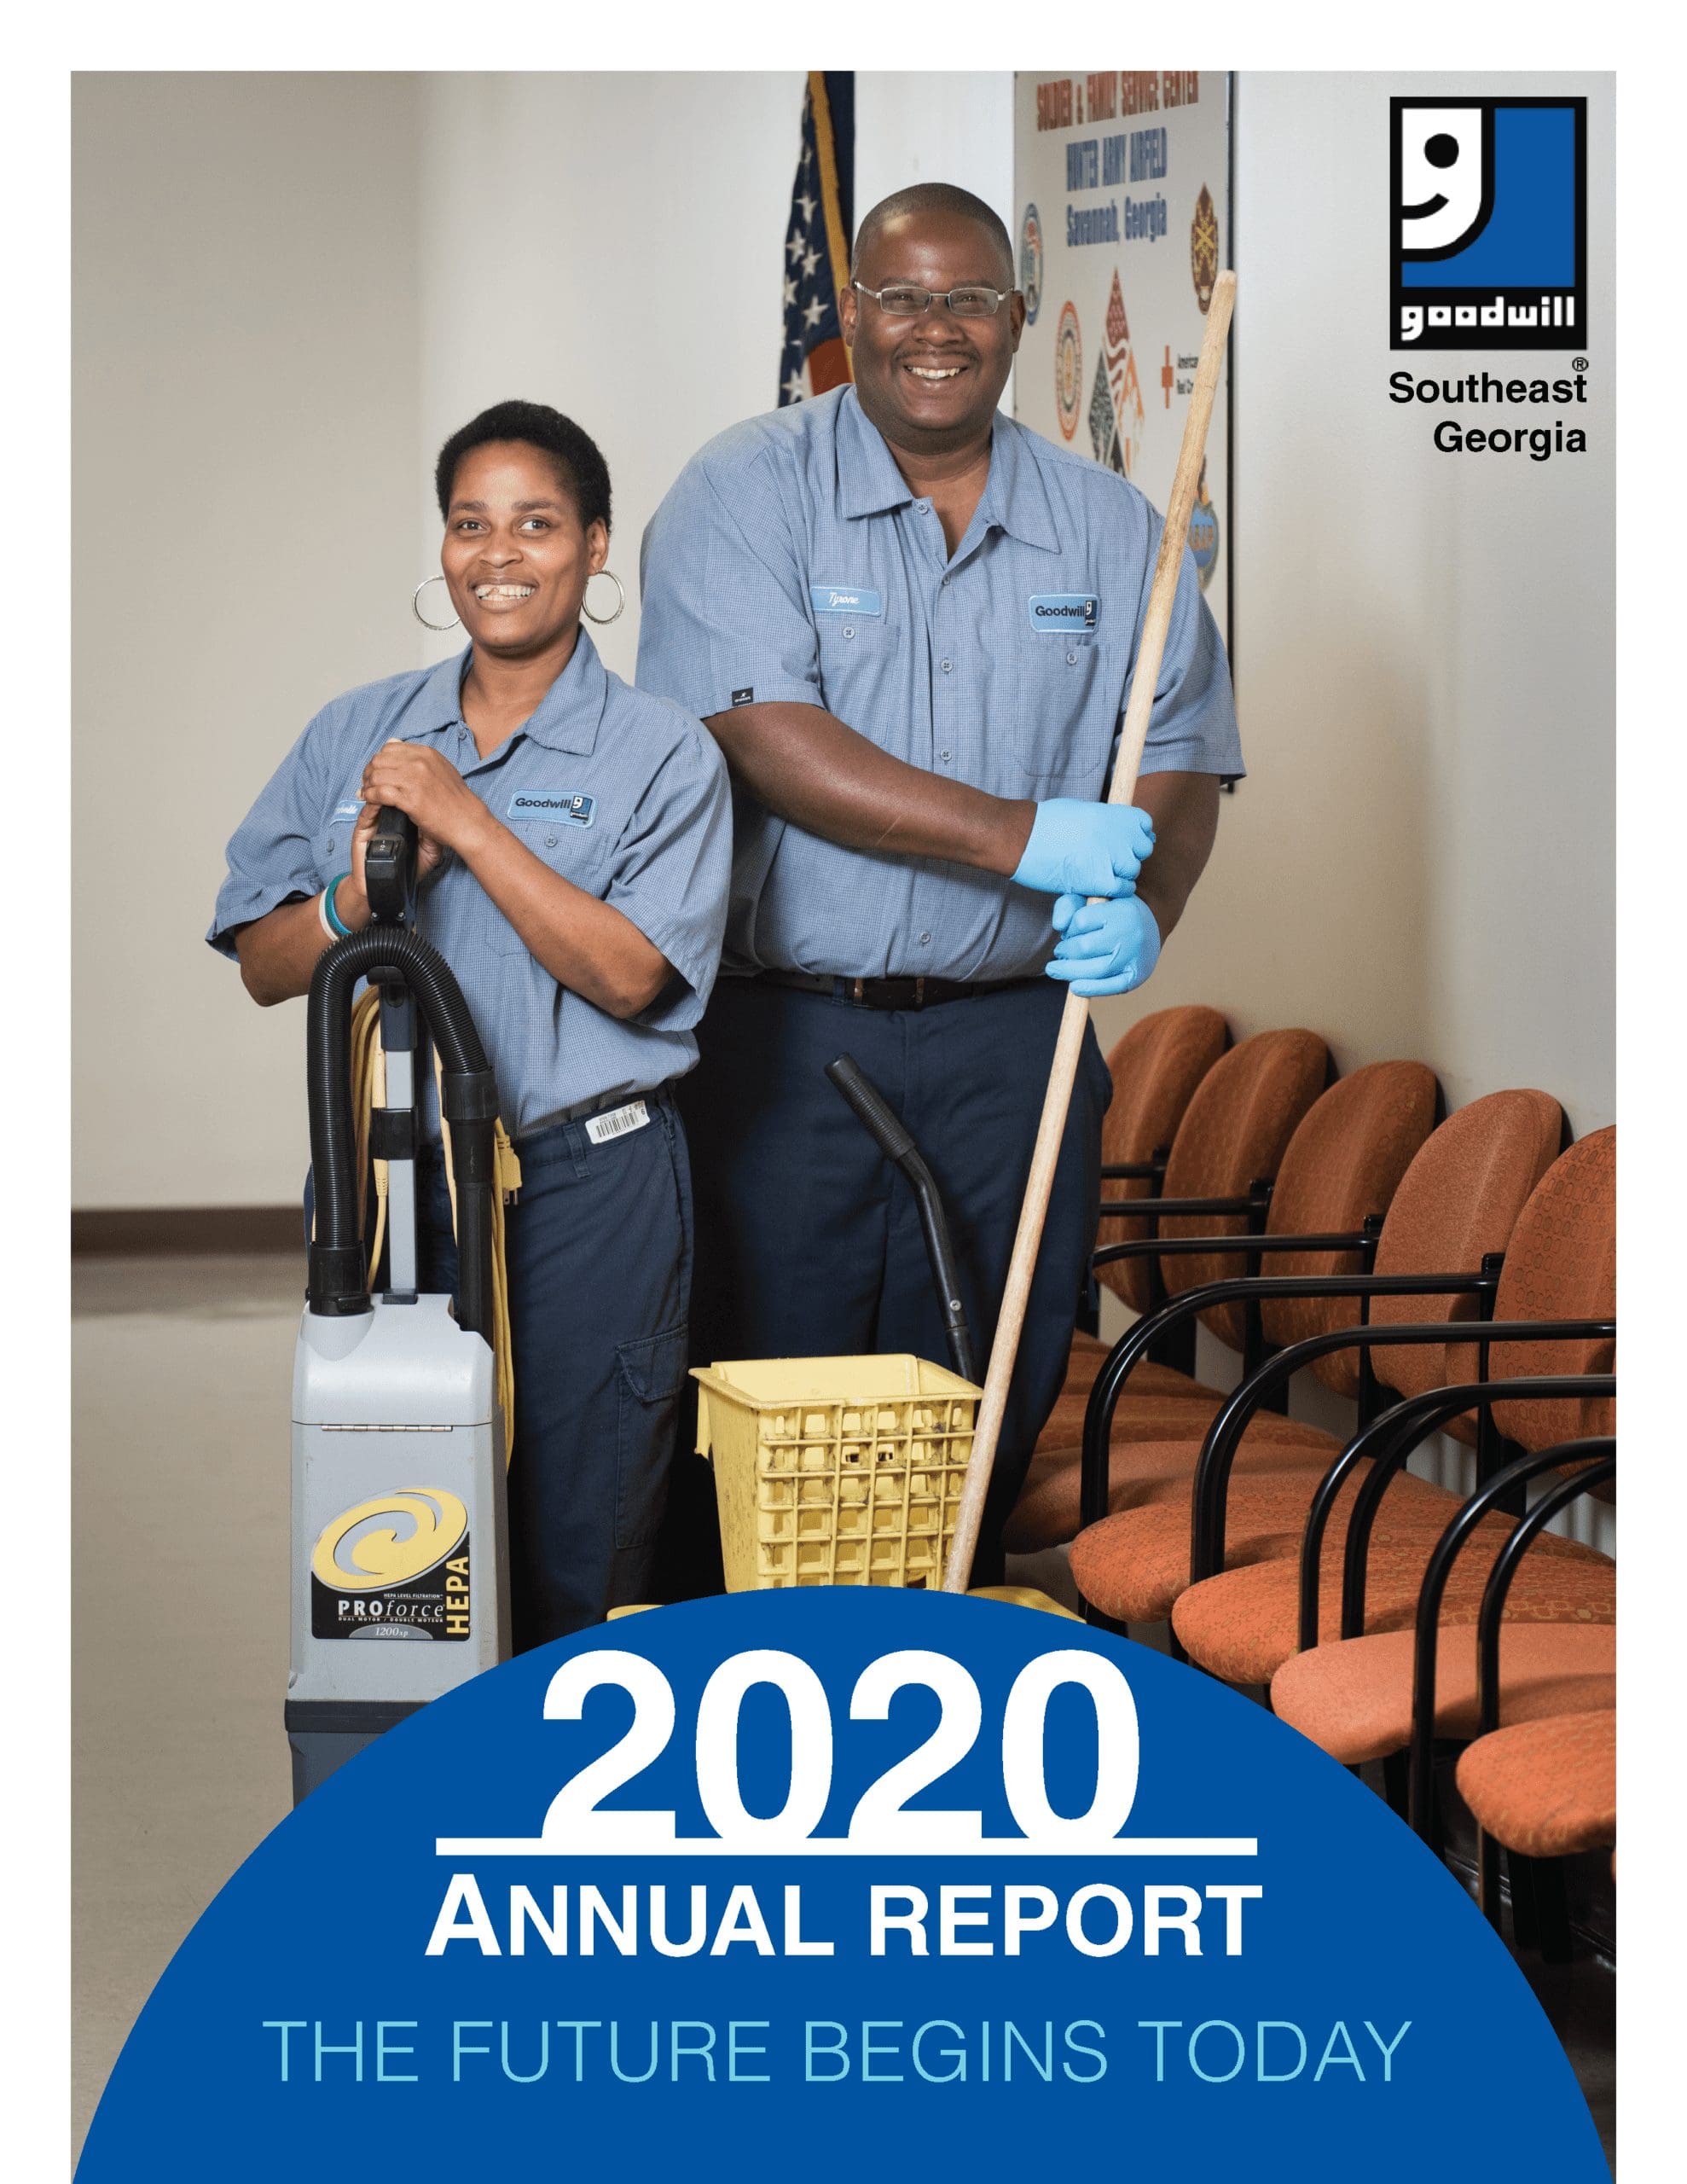 2020 Annual Report GoodwillSEGA 1